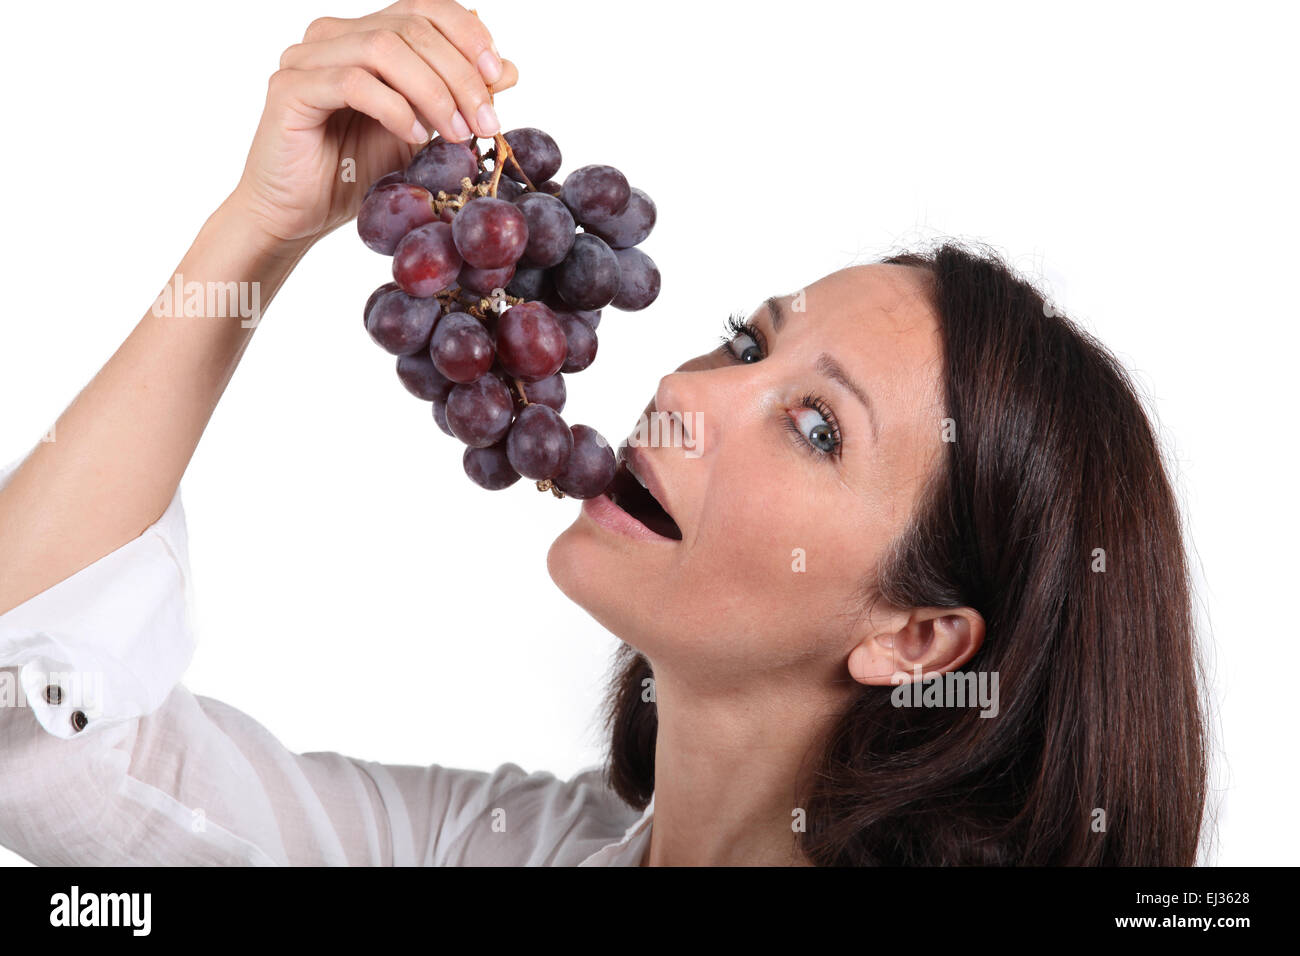 Девушка есть виноград. Виноград в руках. Девушка ест виноград. Руки девушки и виноград. Виноград брюнетка.